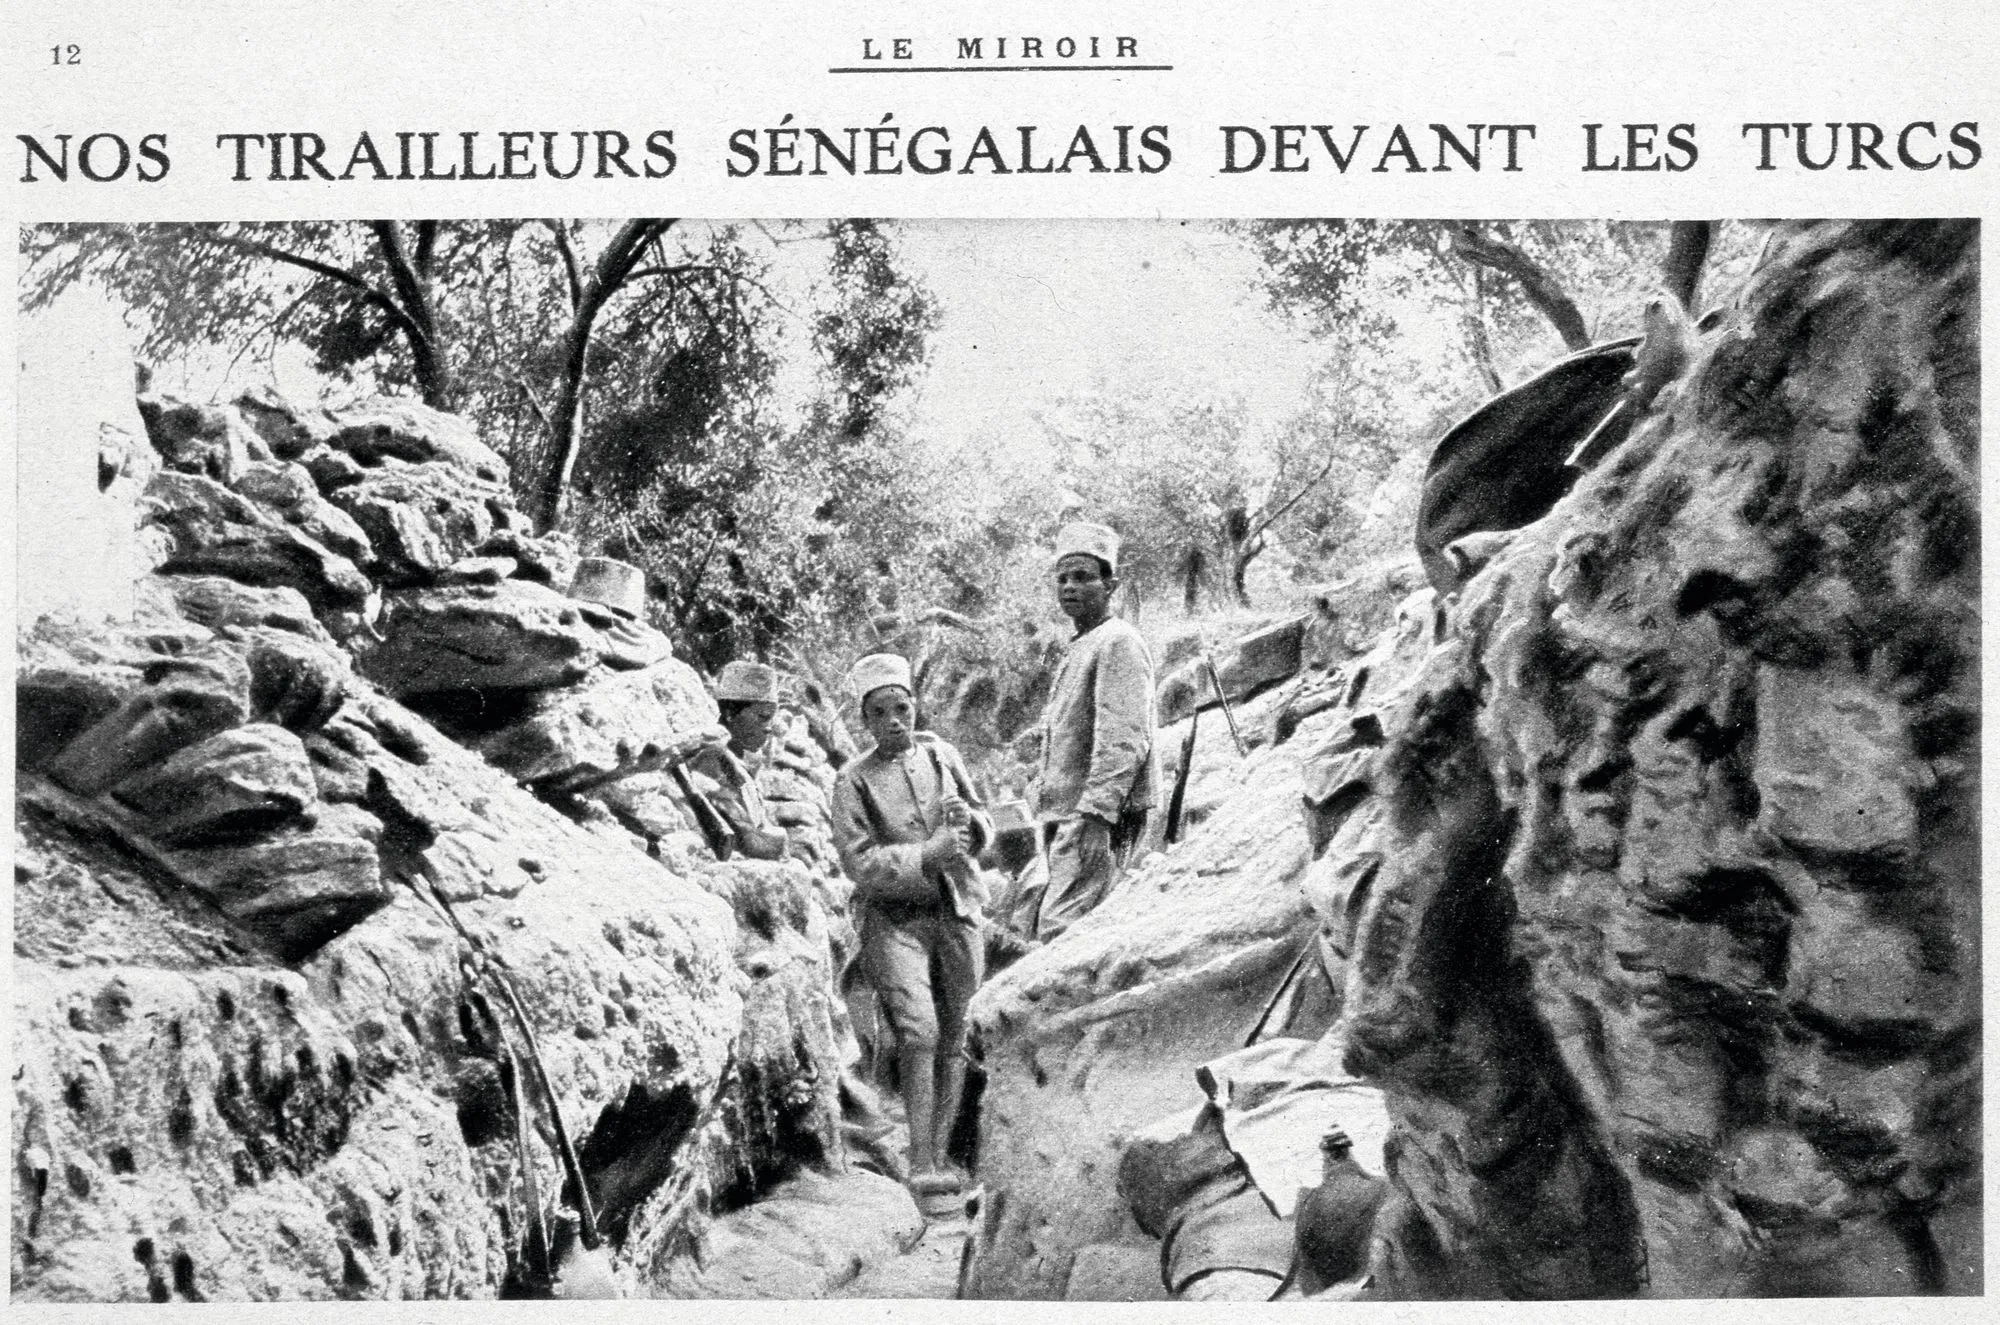 Tirailleurs sénégalais devant les Turcs, une de la revue Le Miroir, 28 novembre 1915